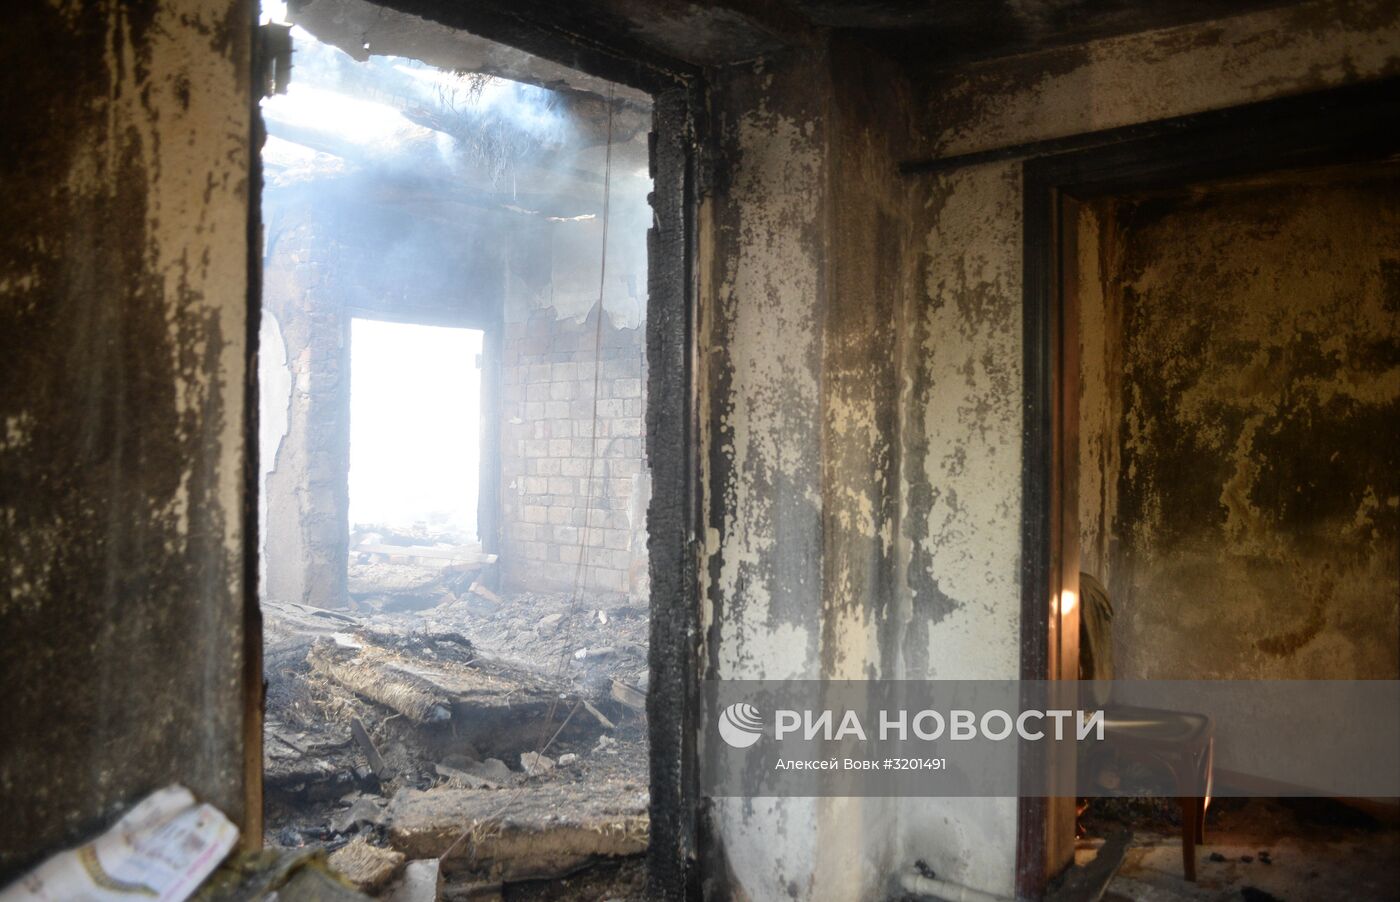 Последствия пожара на складе с боеприпасами в Винницкой области Украины